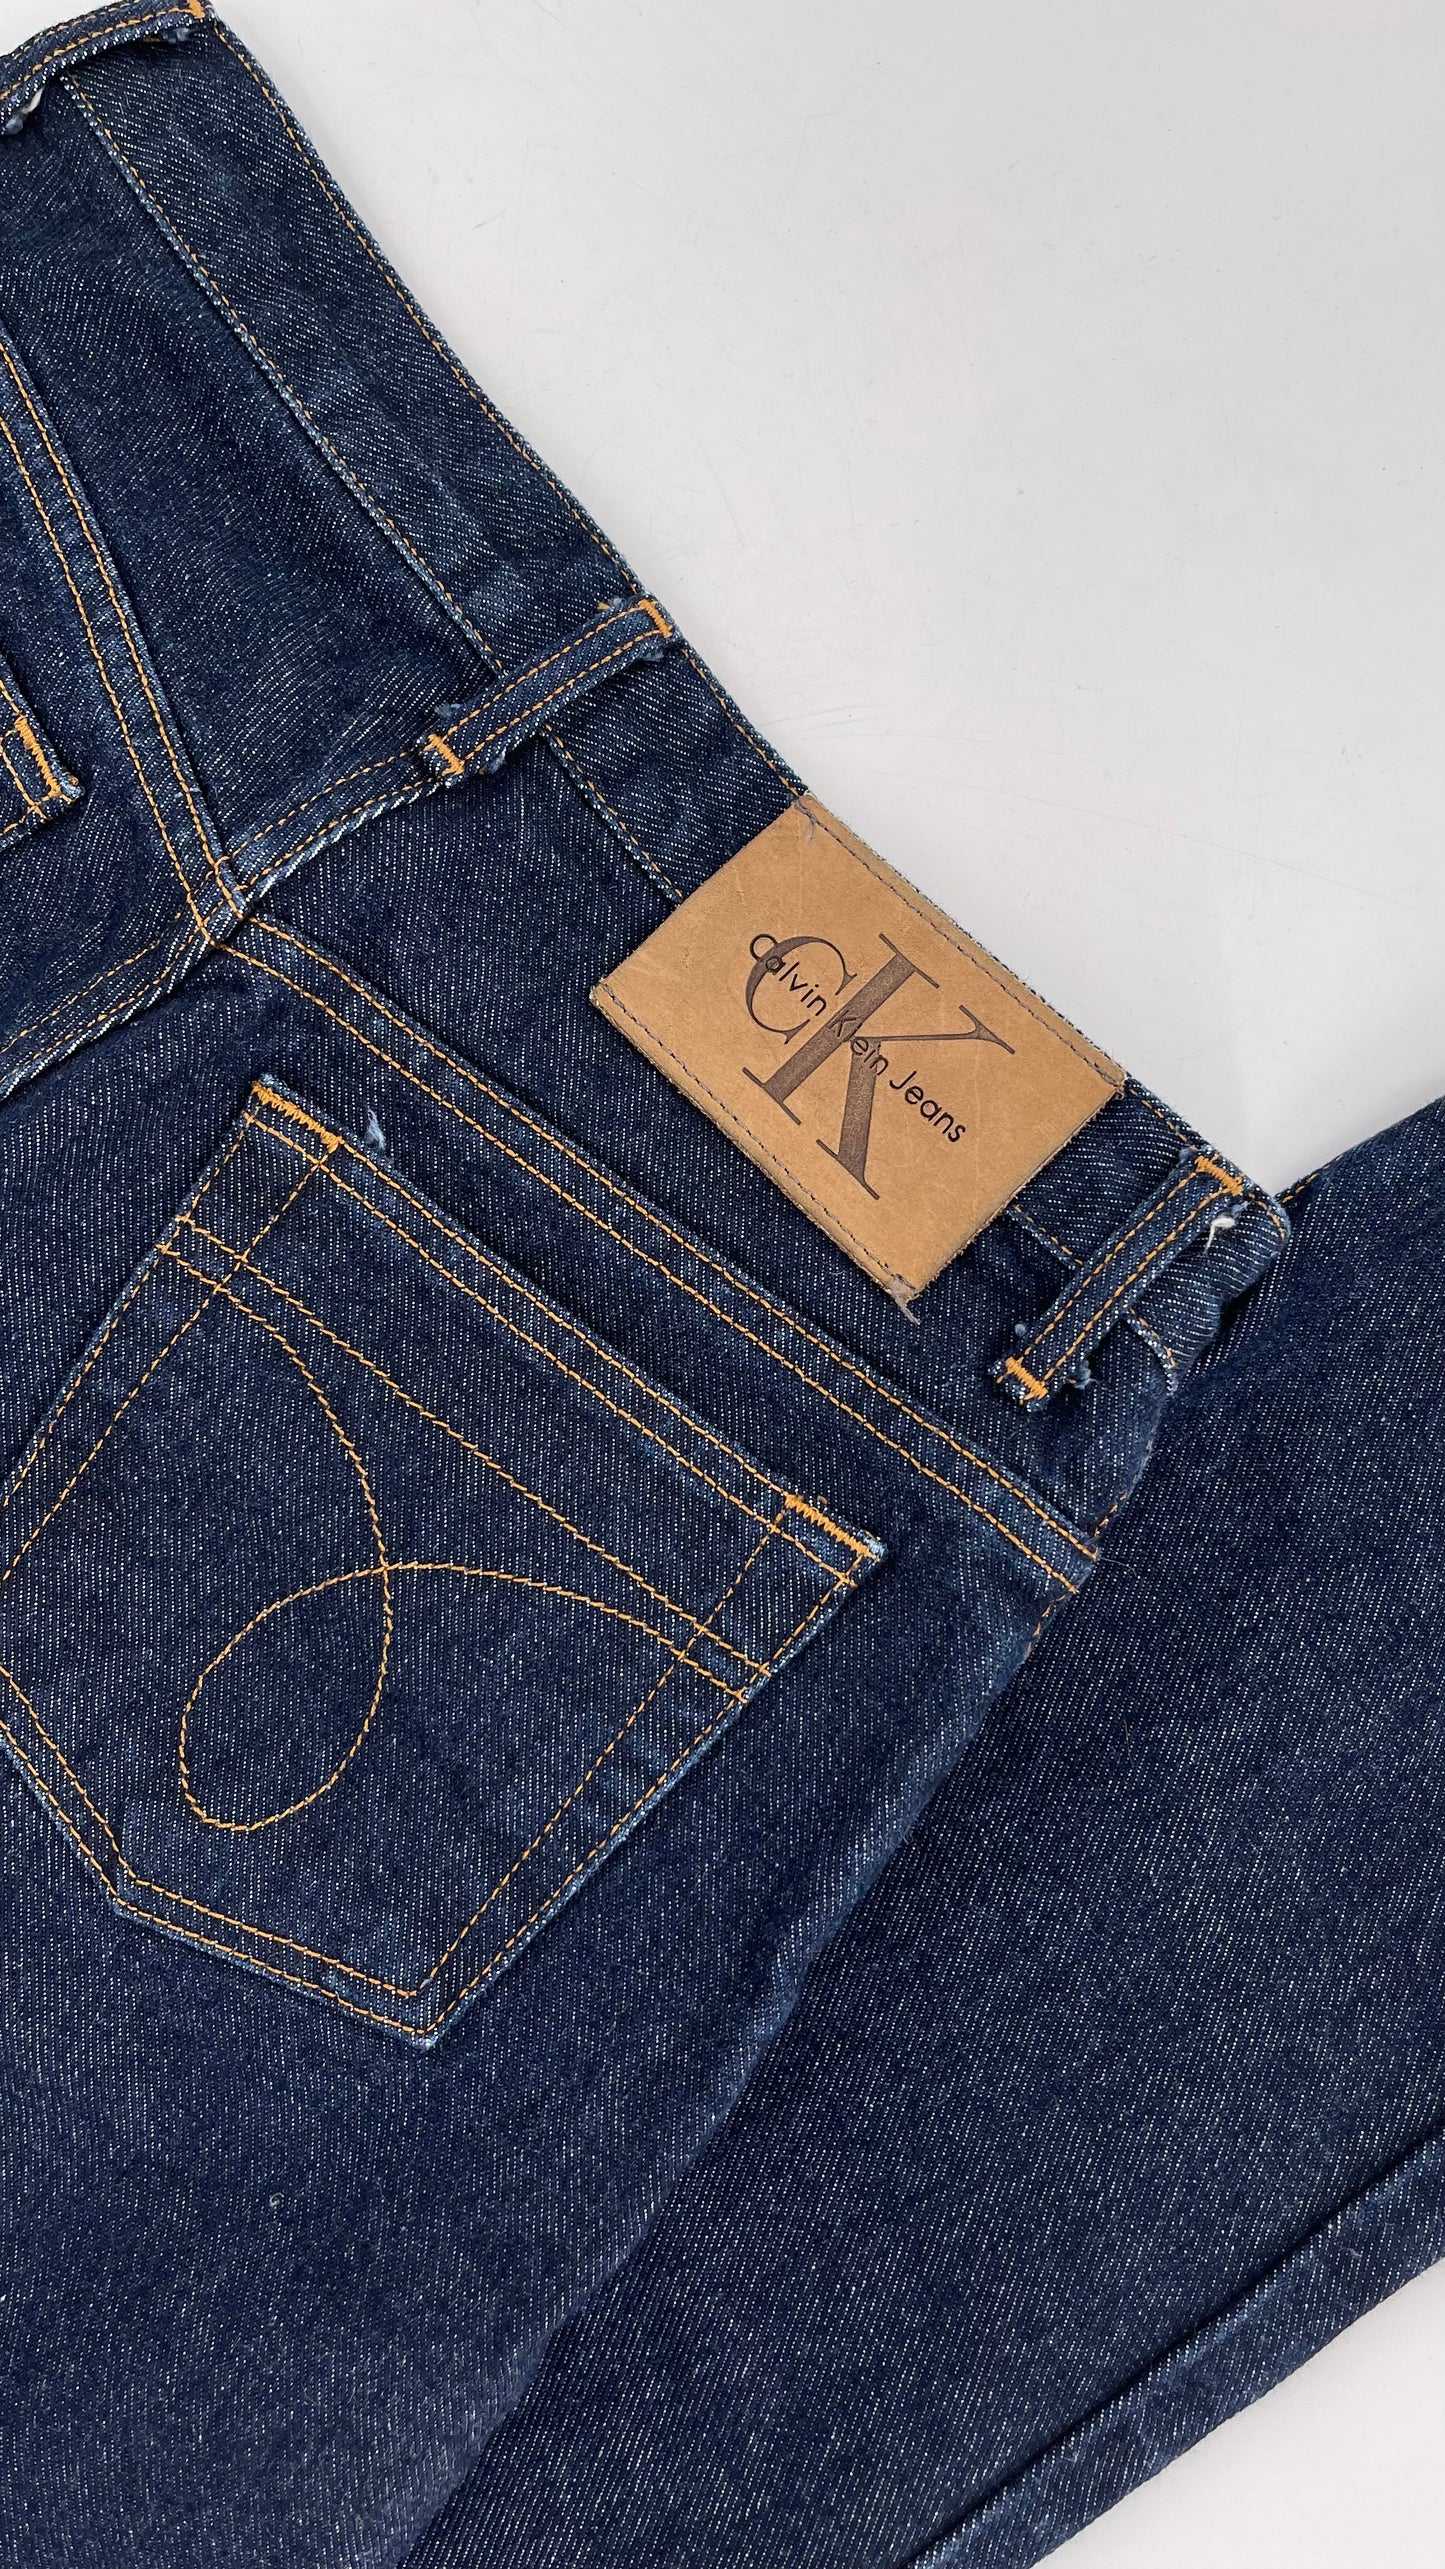 CK Calvin Klein’s Vintage Dark Wash Denim (Size 6)